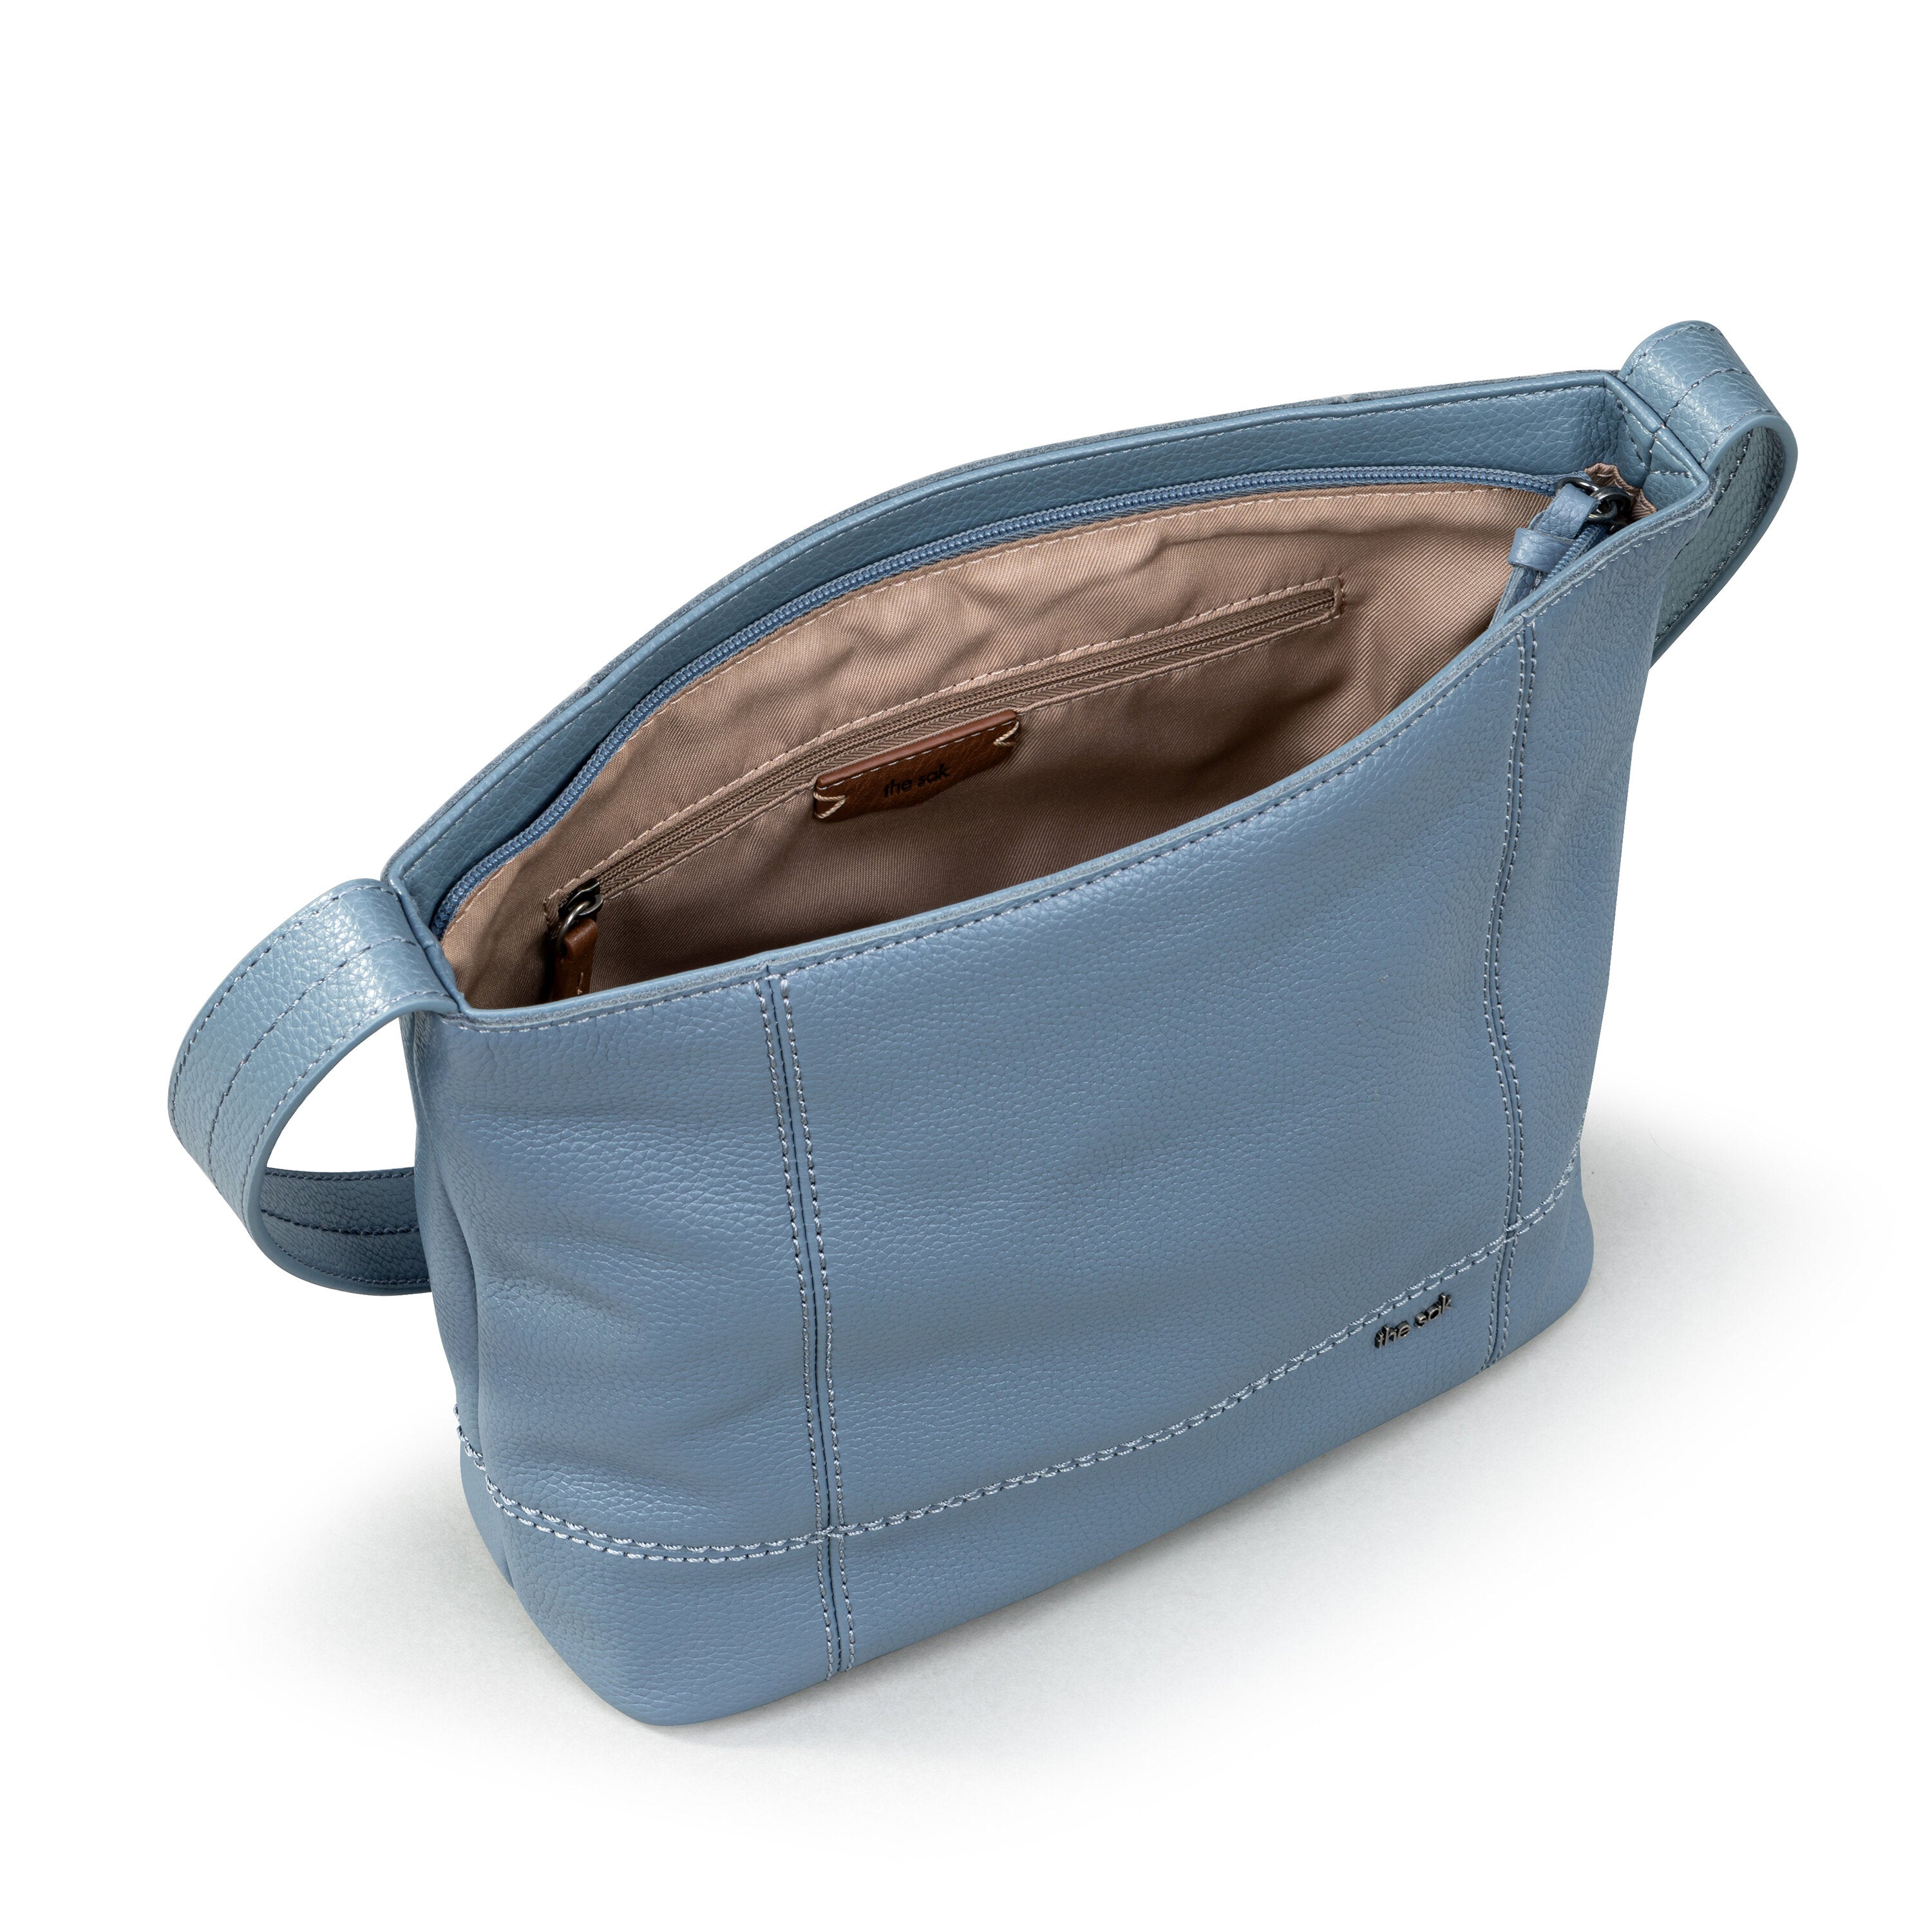 The Sak Ashland Tobacco Colored Leather Bucket Bag | eBay